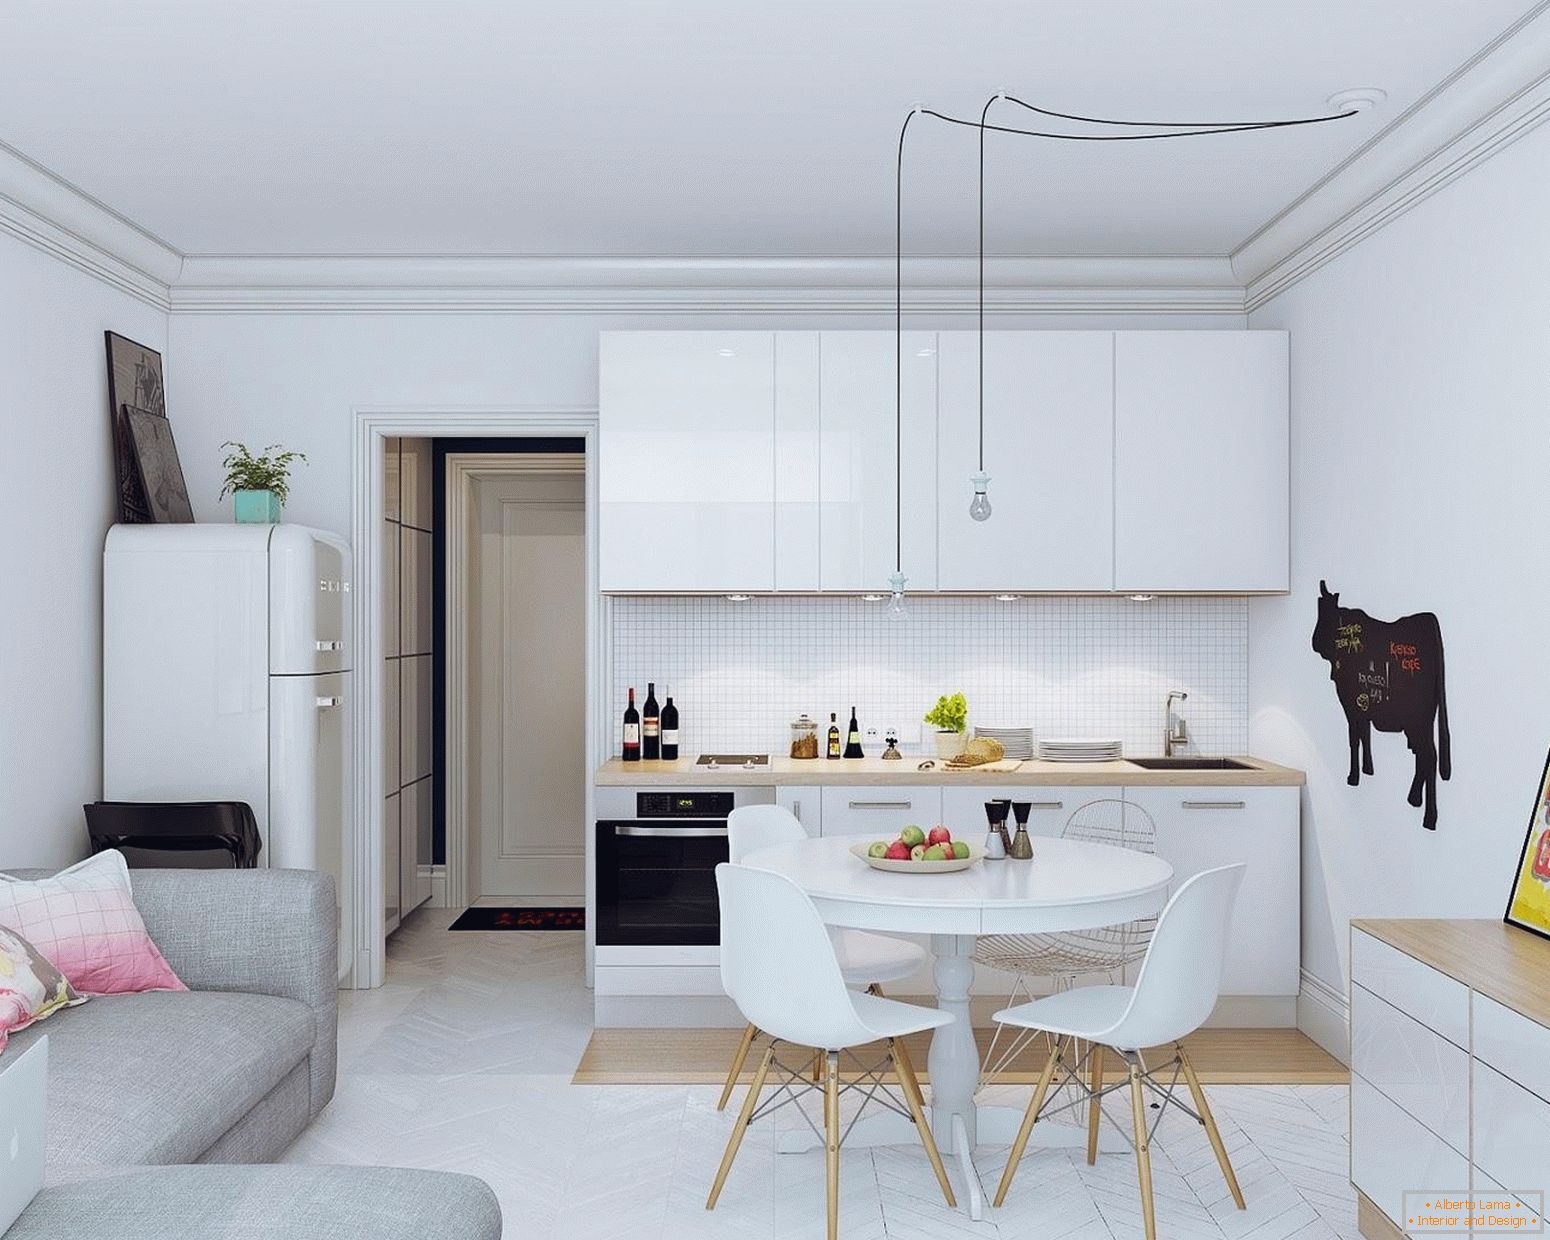 Cameră modernă cu bucătărie în execuție luminoasă